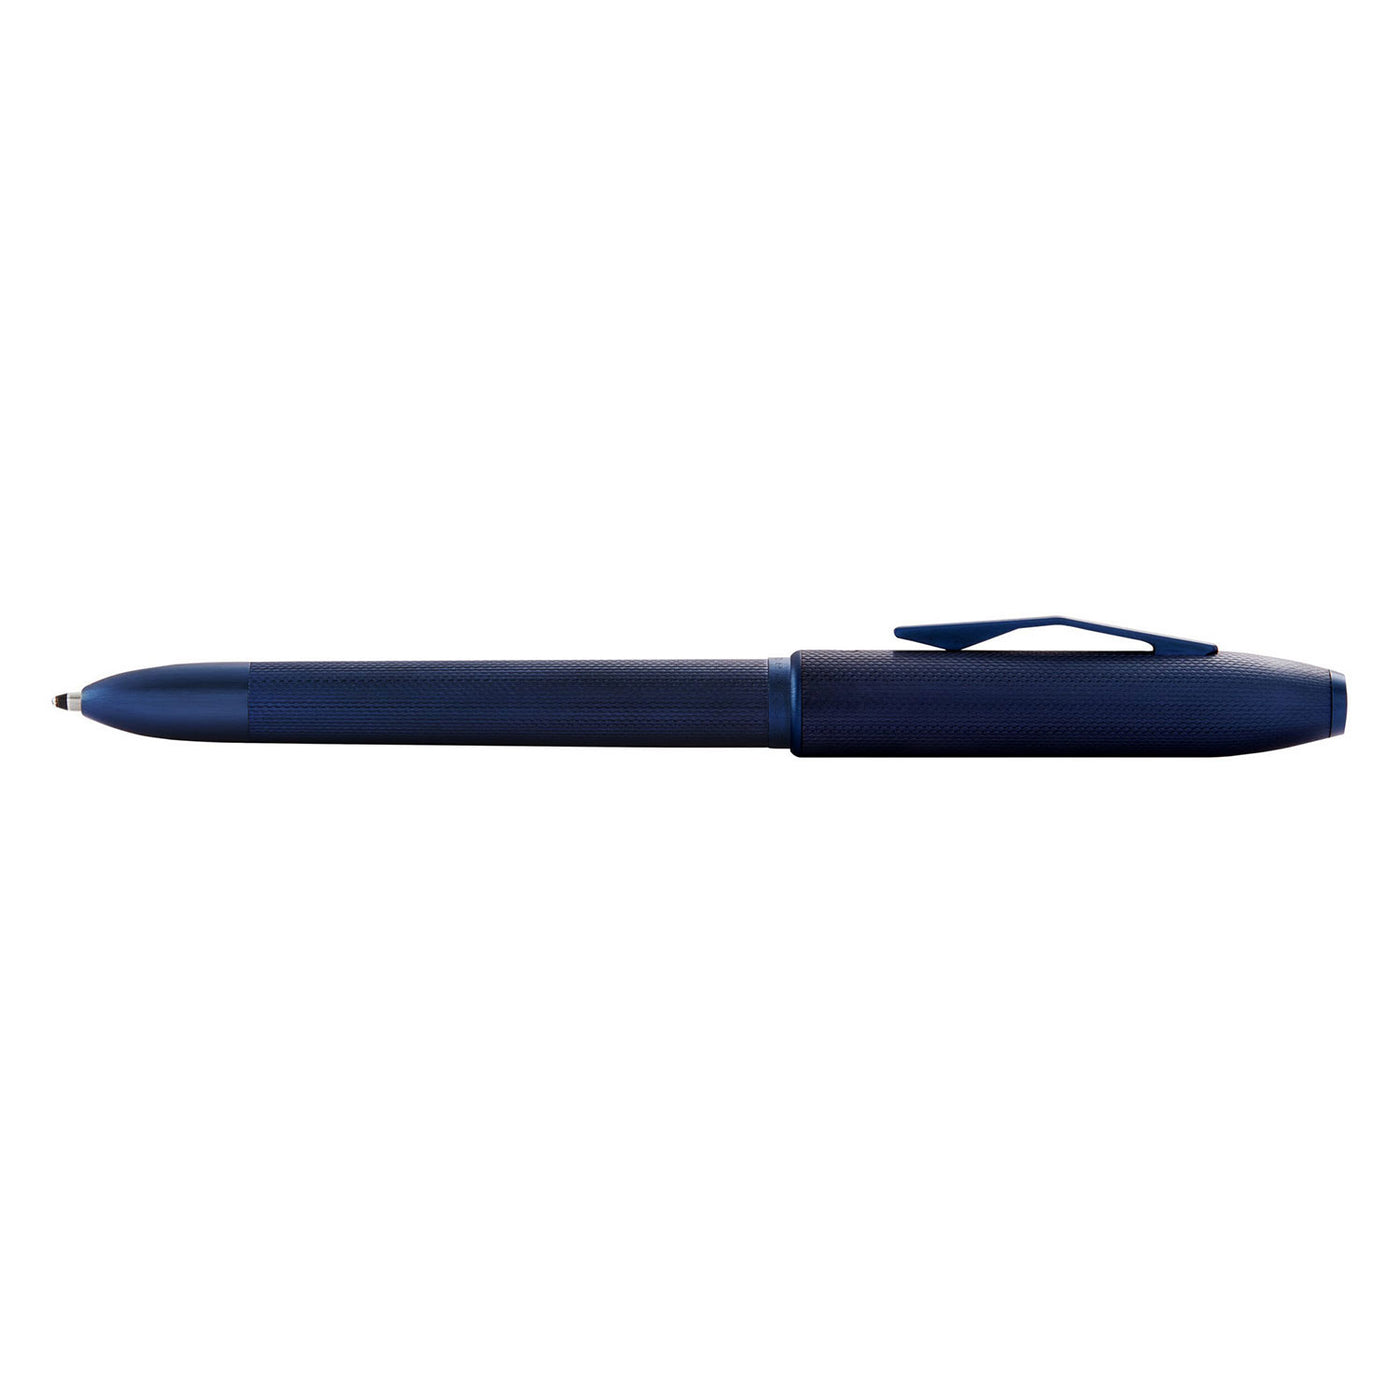 Cross Tech4 Multifunction Ball Pen - Textured Blue PVD 5